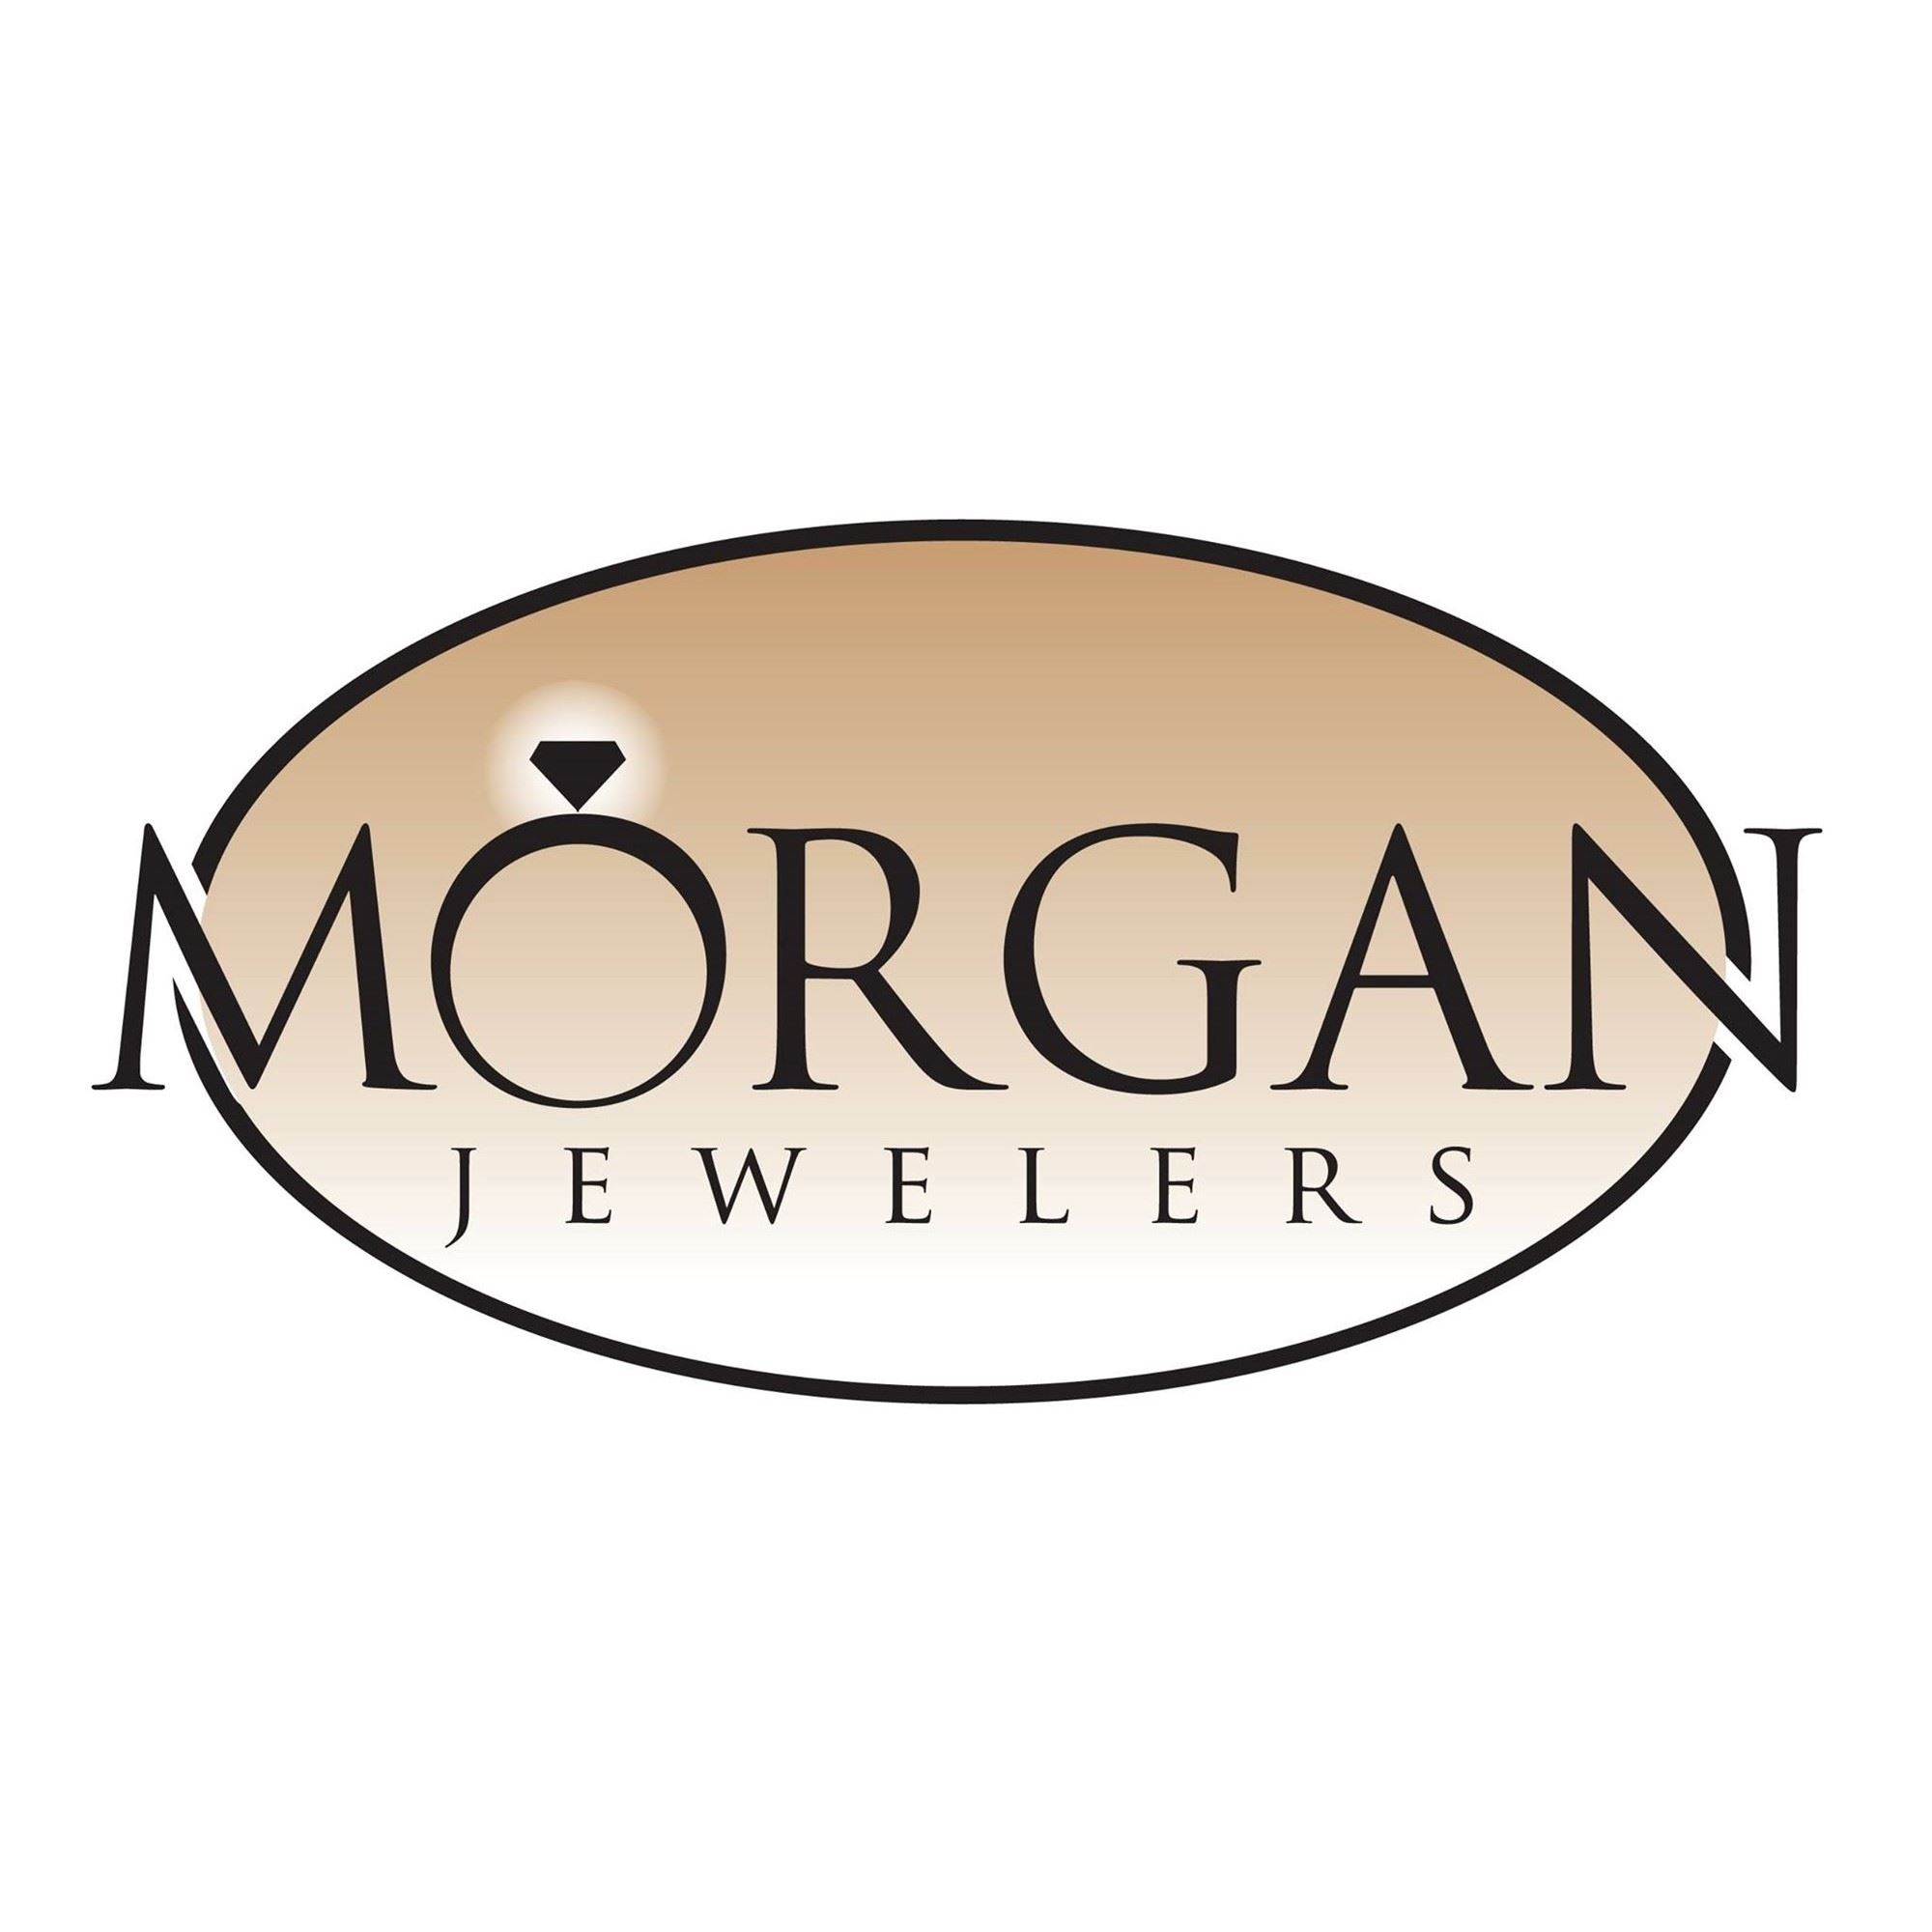 Morgan Jewelers